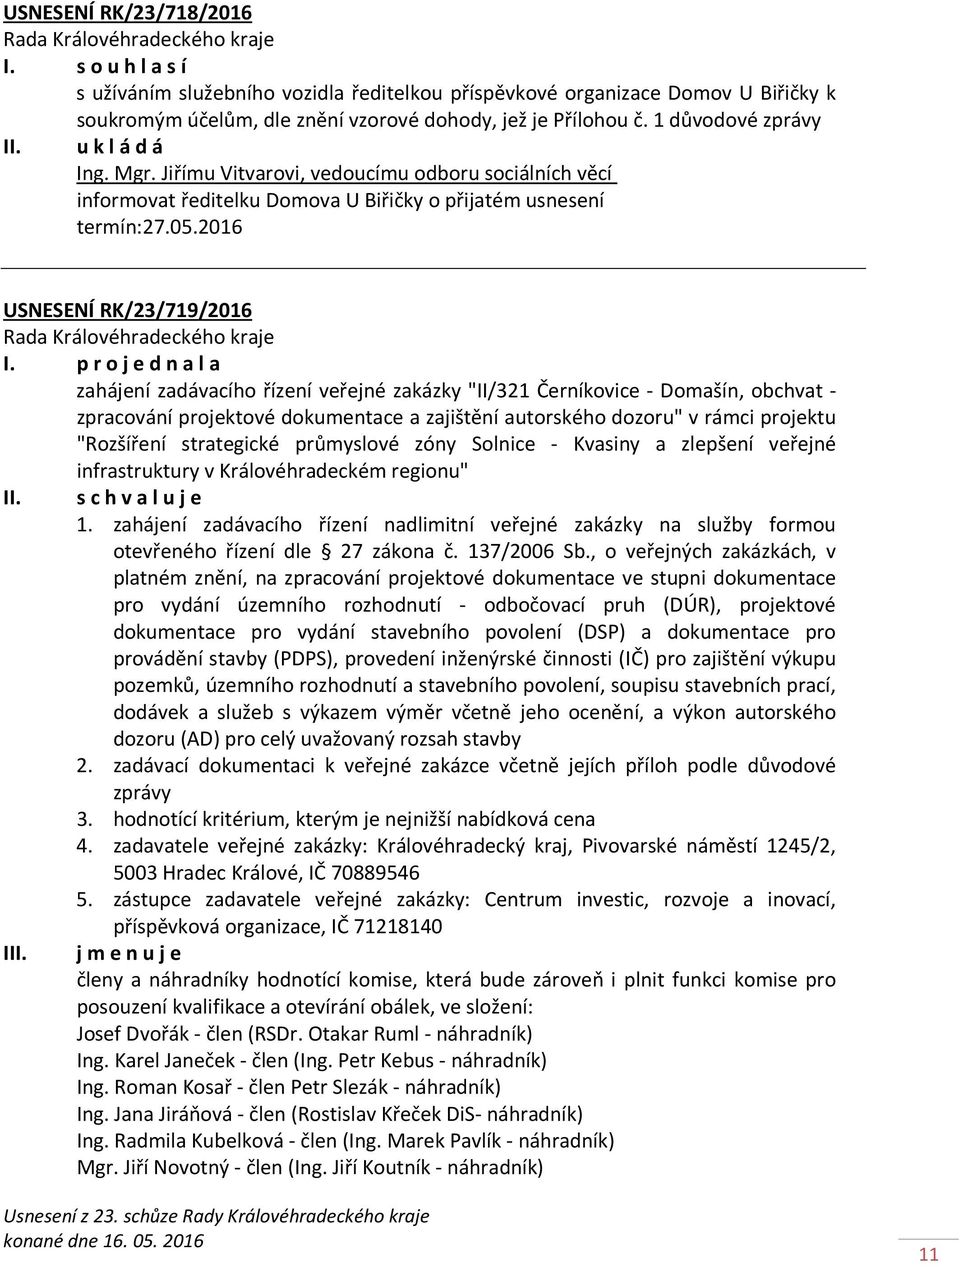 2016 USNESENÍ RK/23/719/2016 zahájení zadávacího řízení veřejné zakázky "II/321 Černíkovice - Domašín, obchvat - zpracování projektové dokumentace a zajištění autorského dozoru" v rámci projektu